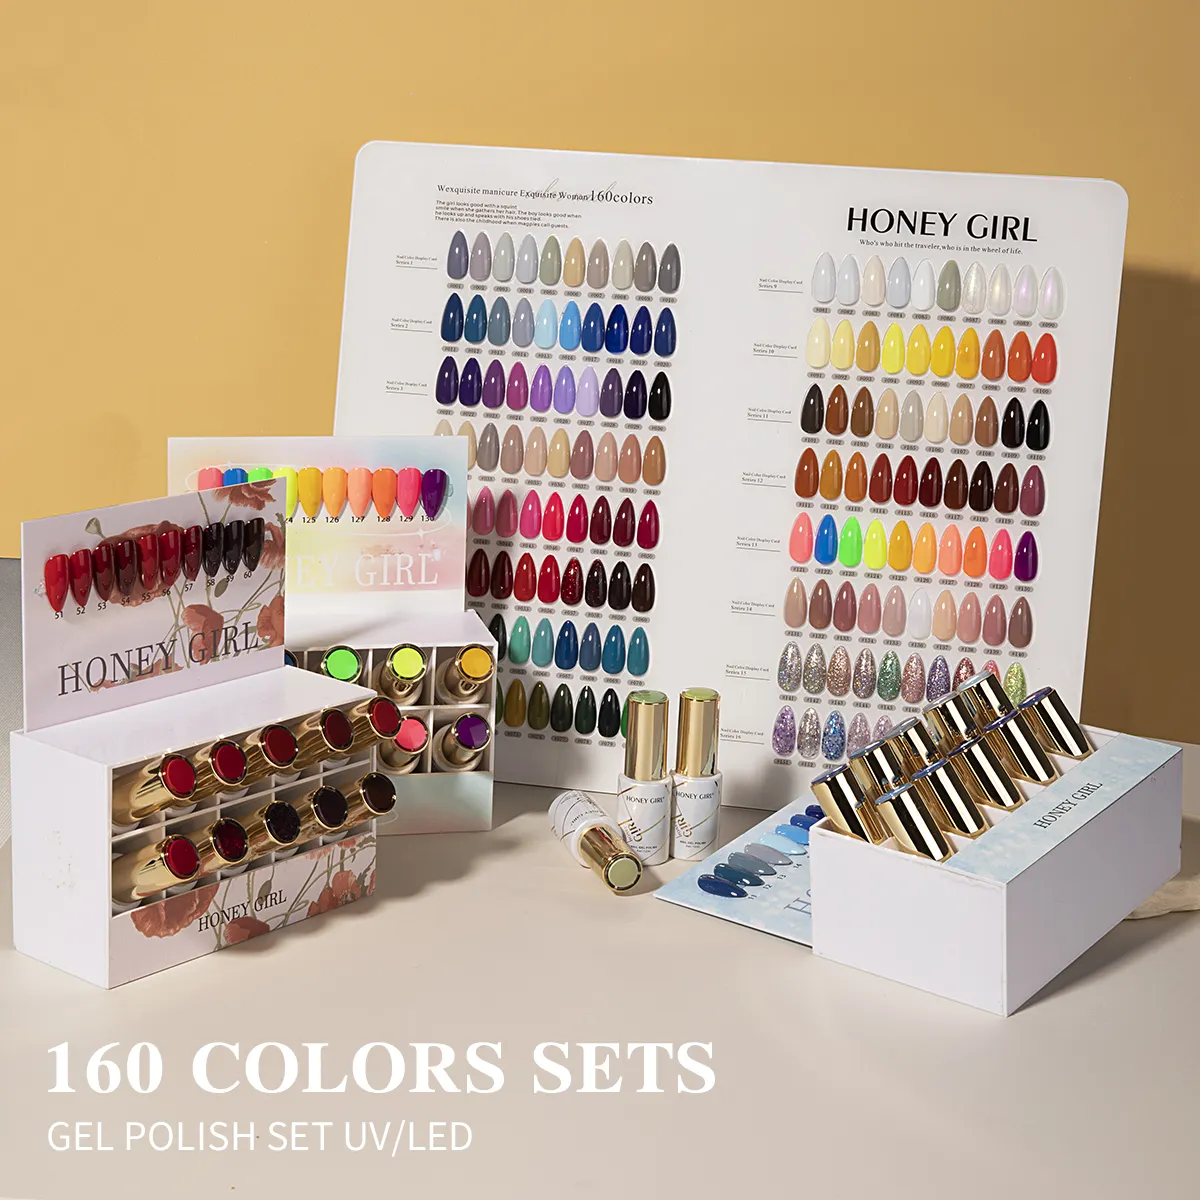 HONEY GIRL Nagelzubehör neues Design 160 Farben Sammlung Nagel-Gellack-Set-Box OEM geruchsloser Uv-Gellack dauerhafter